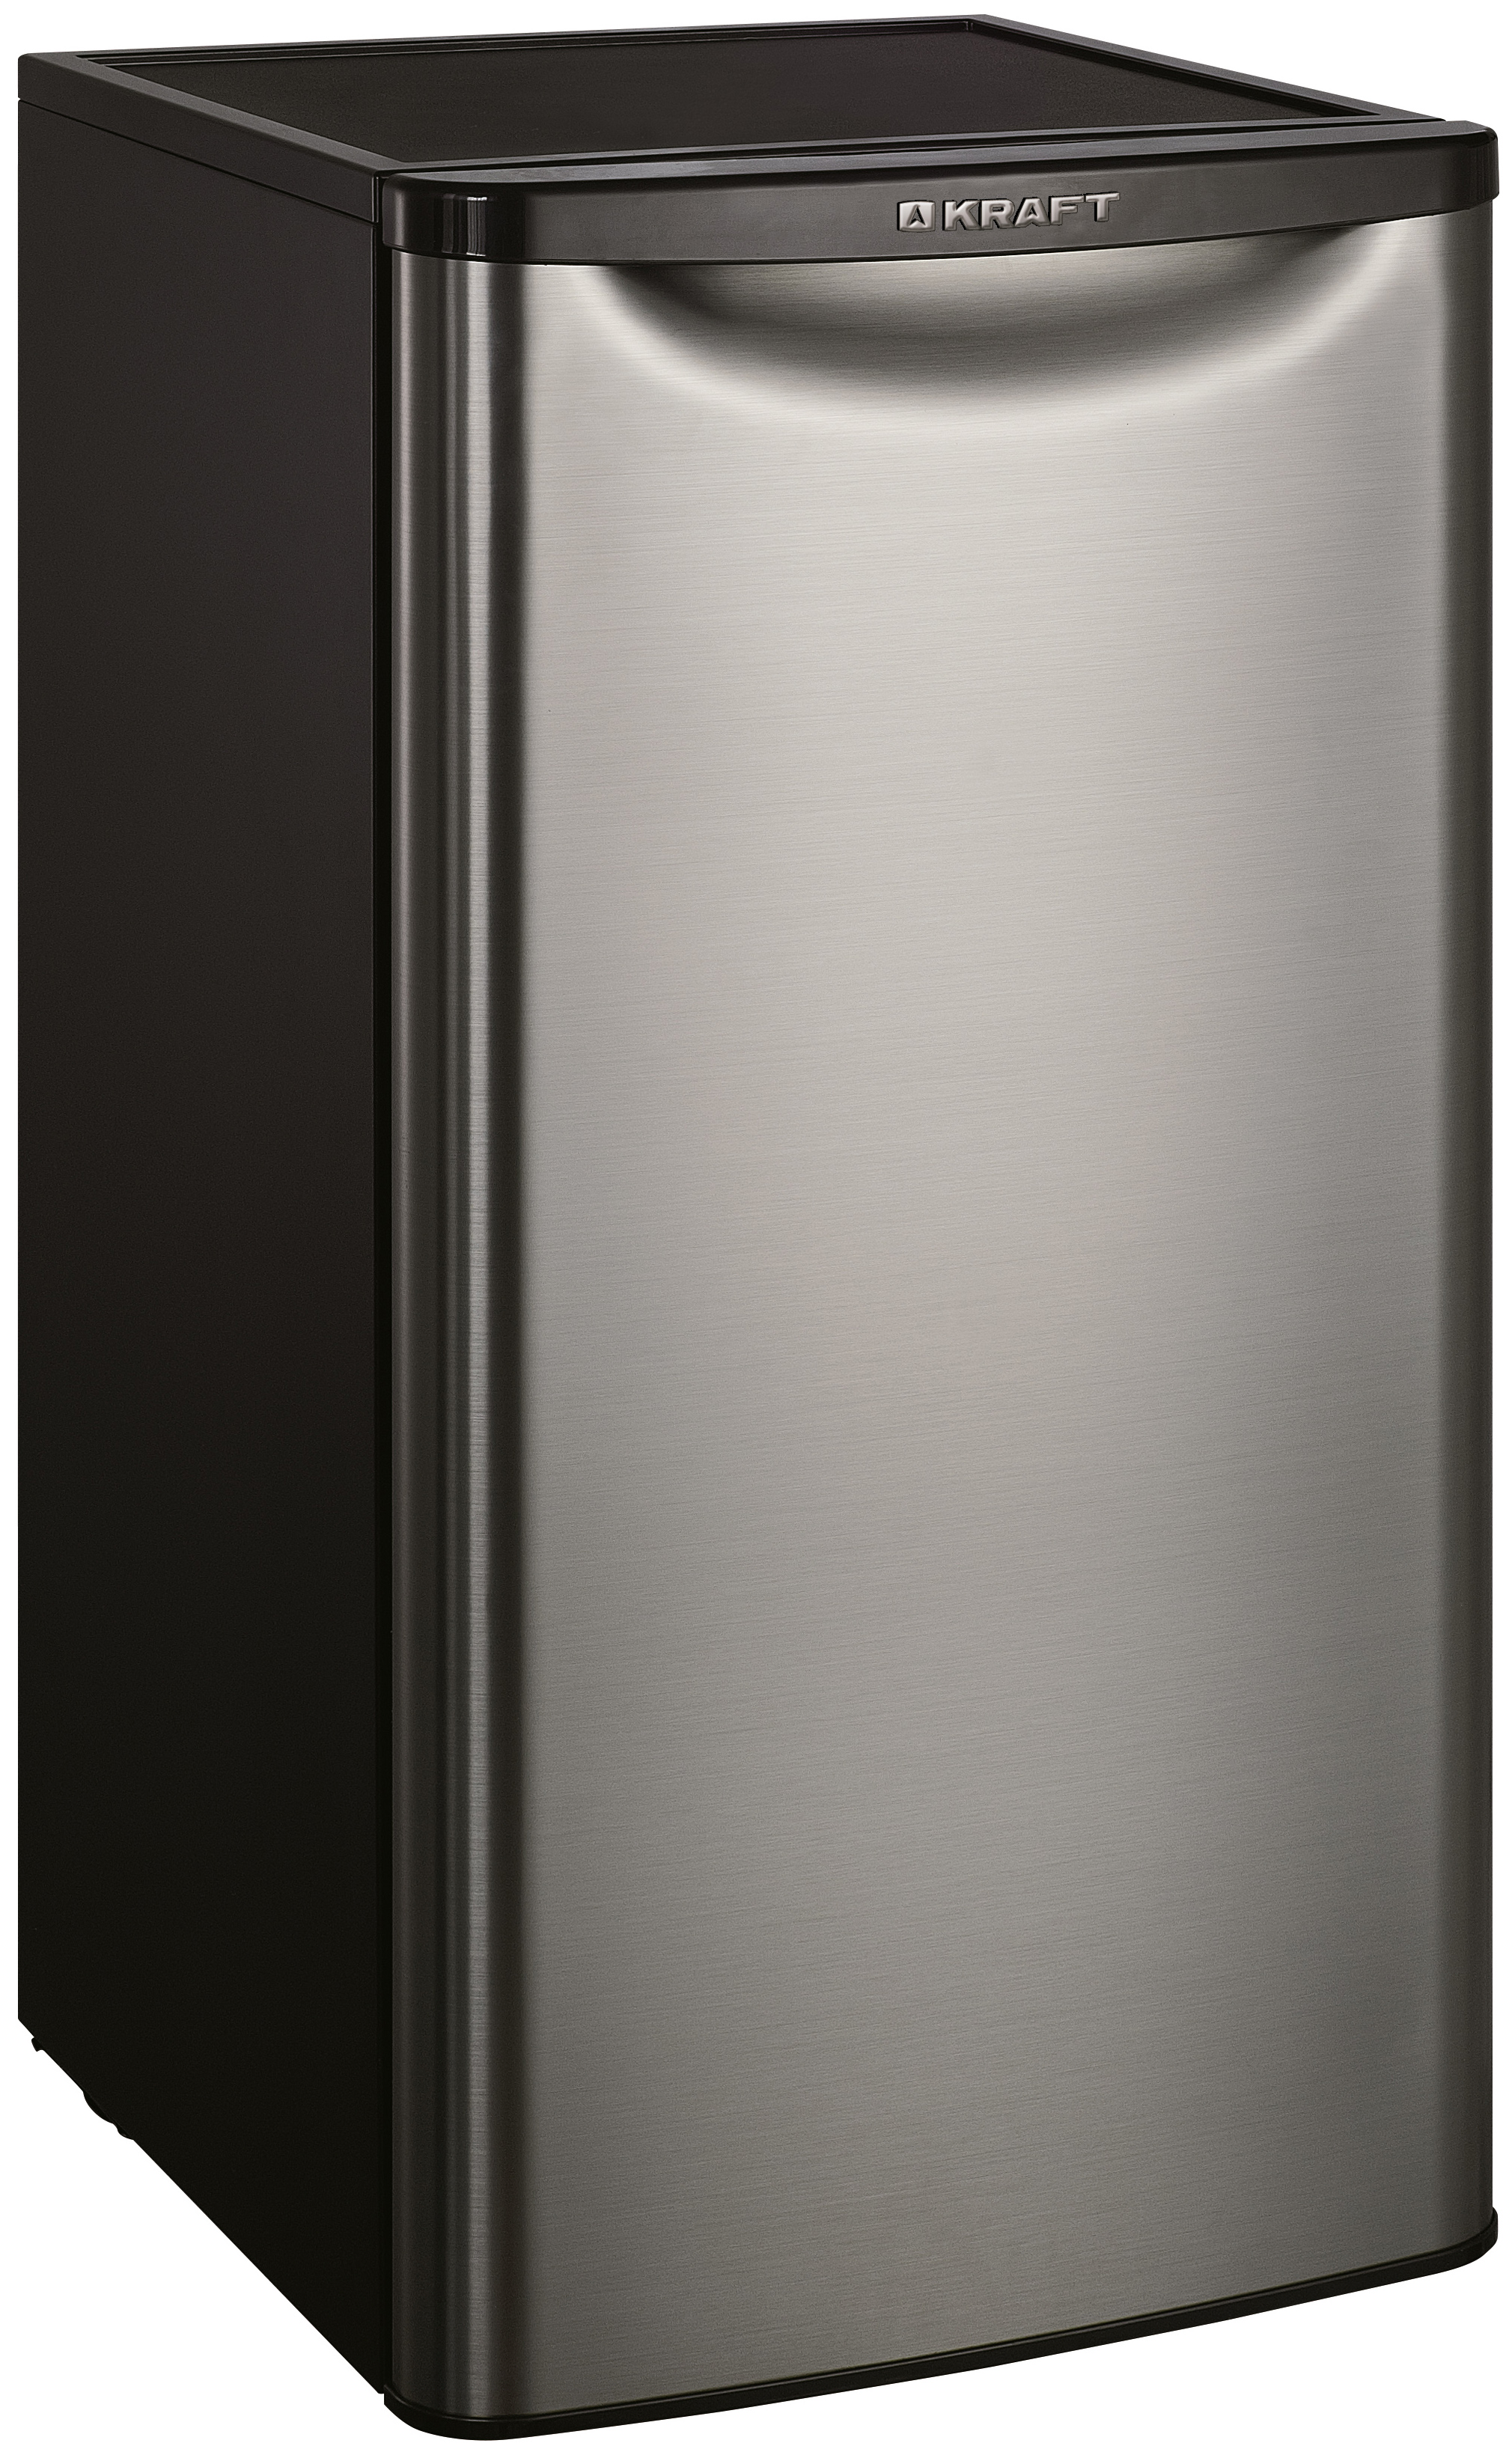 Холодильник KRAFT BR-95I серебристый однокамерный холодильник liebherr rbsfe 5221 20 001 серебристый